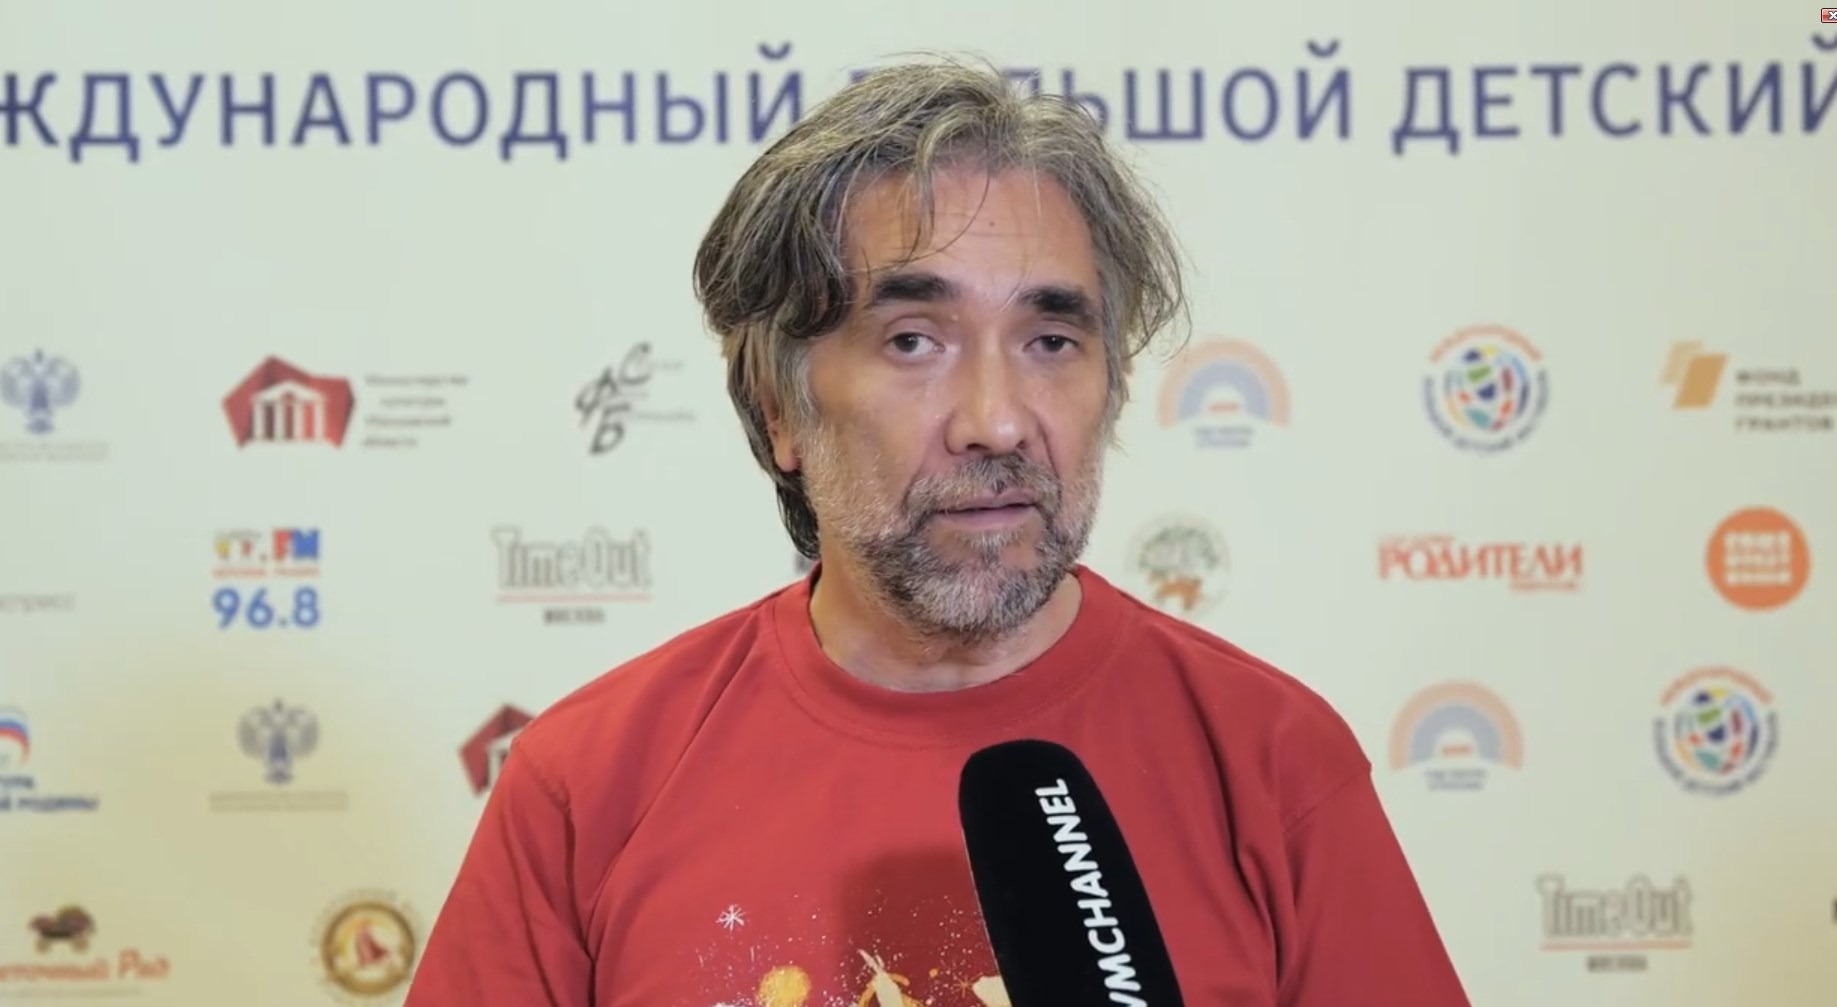 Михаил Алдашин приглашает на II Международный Большой Детский фестиваль